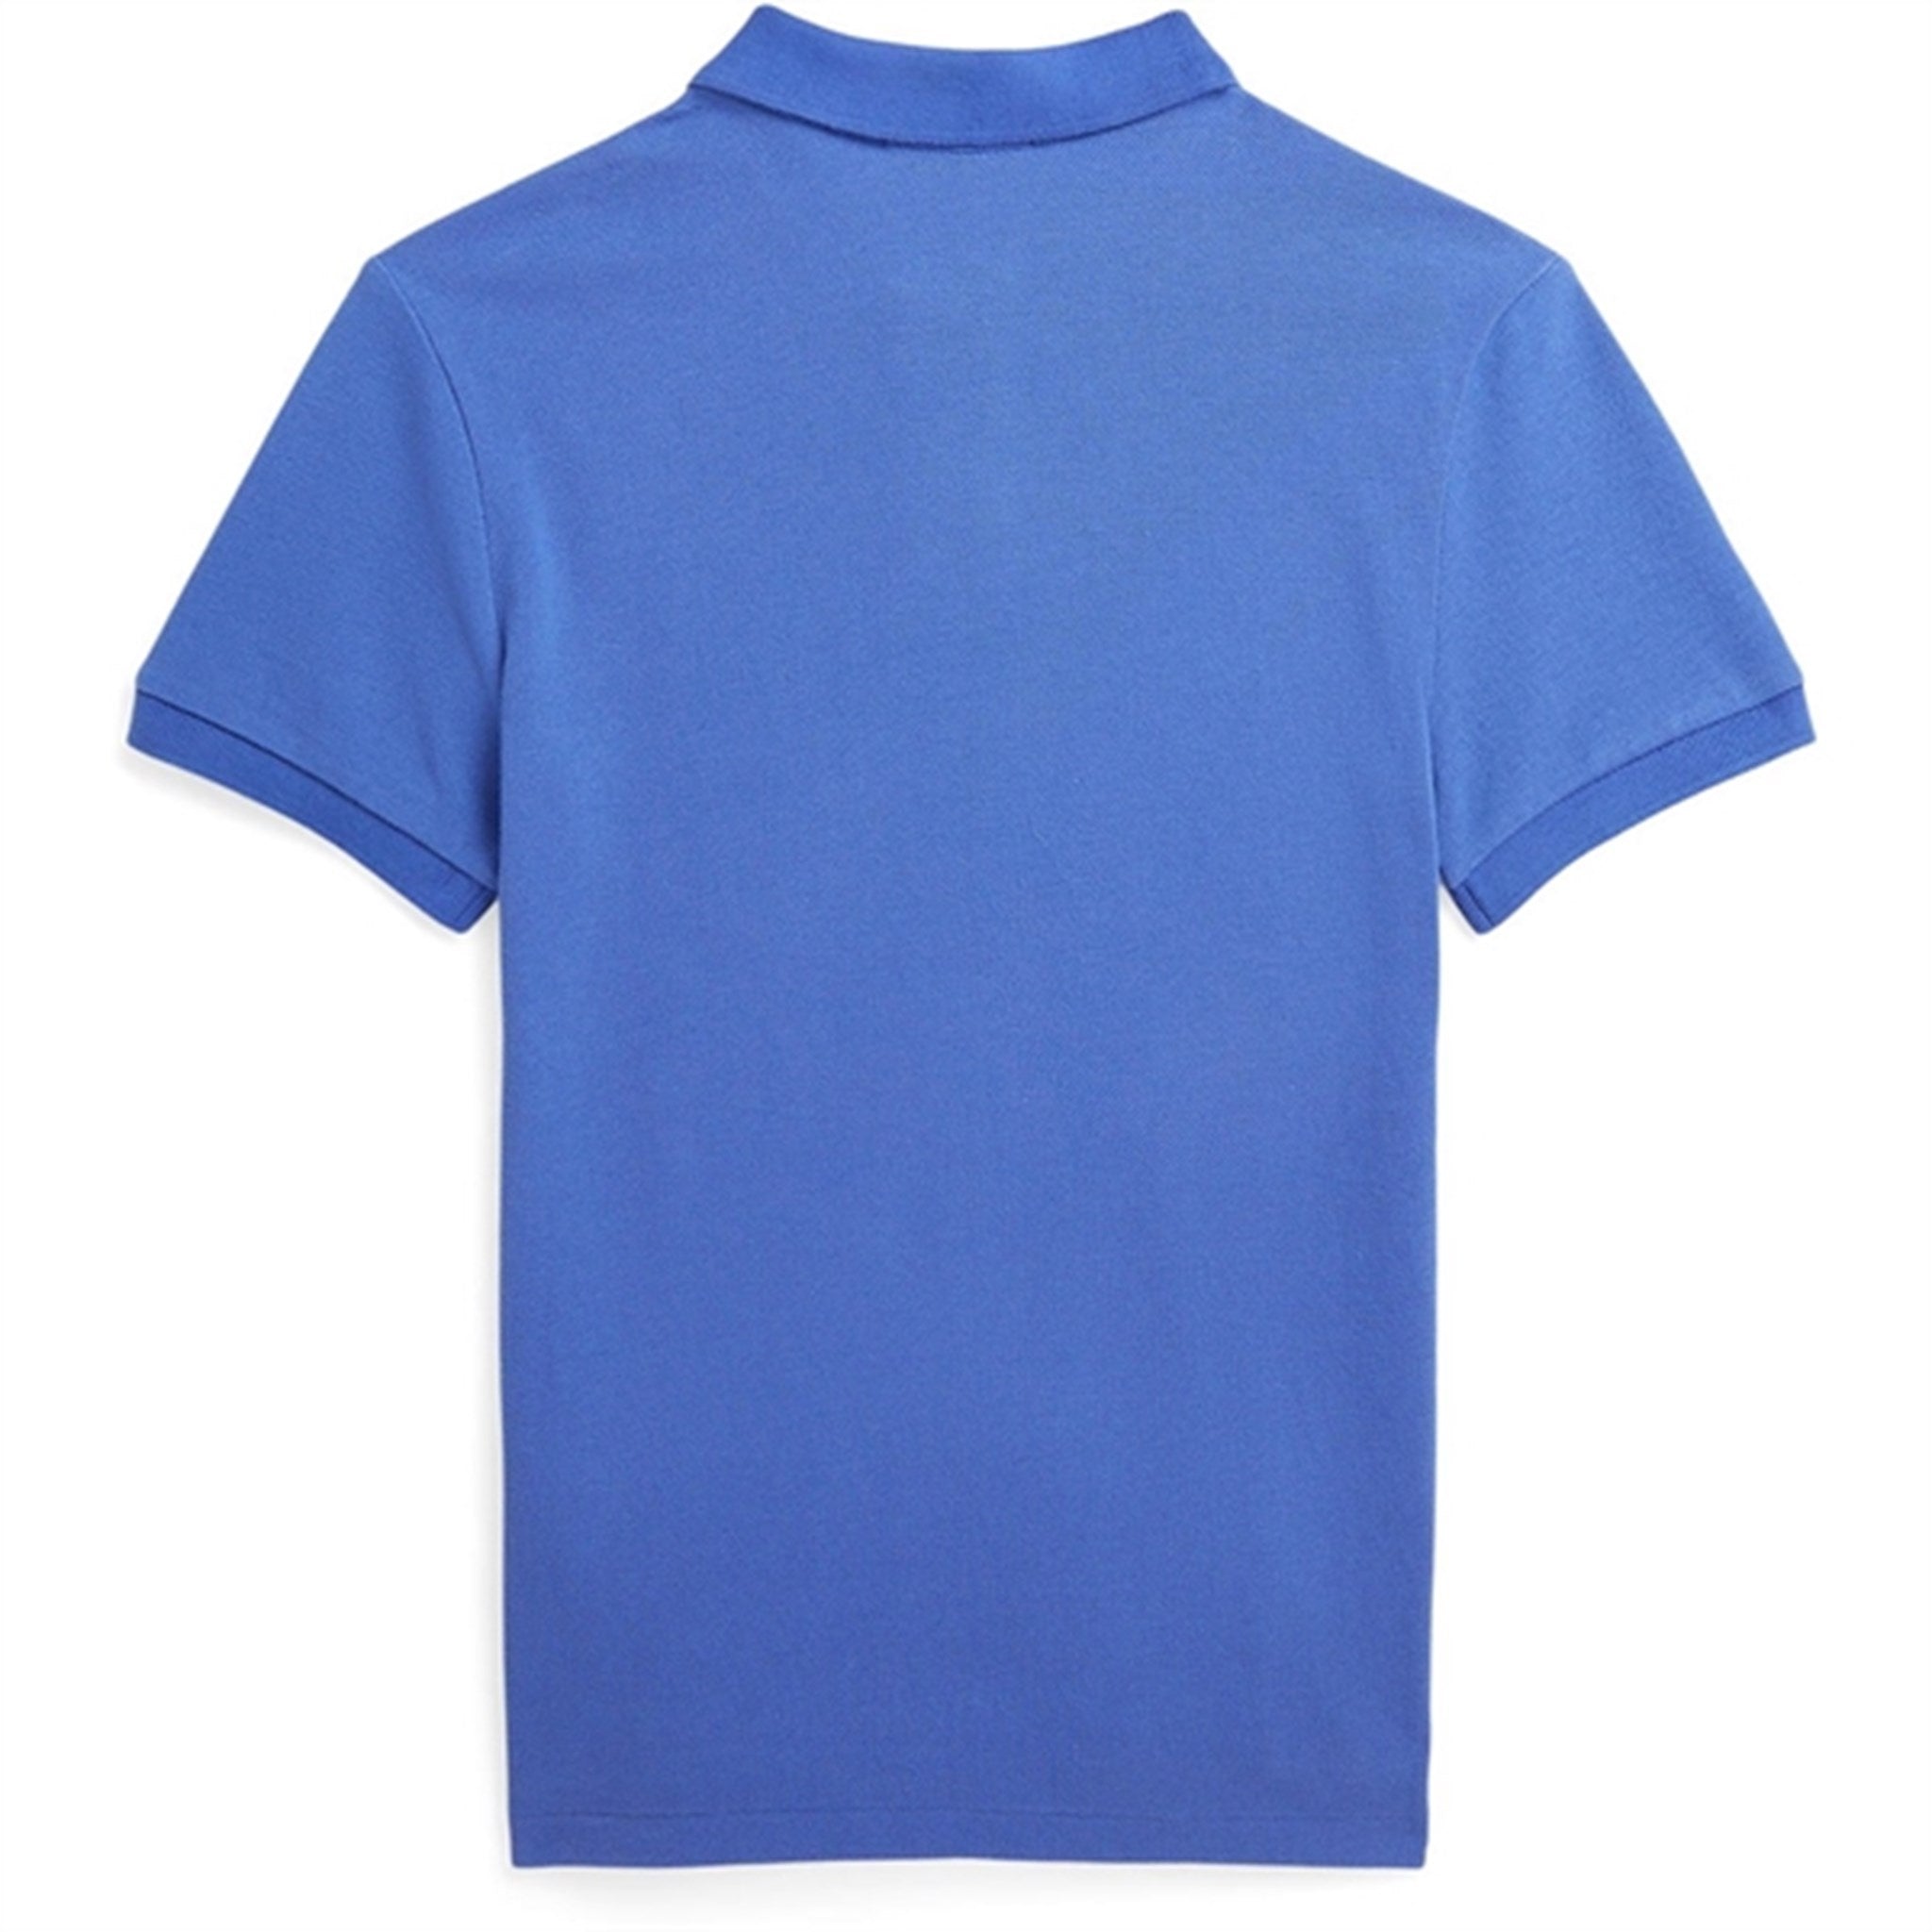 Polo Ralph Lauren Boys Polo Shirt Liberty Blue 2